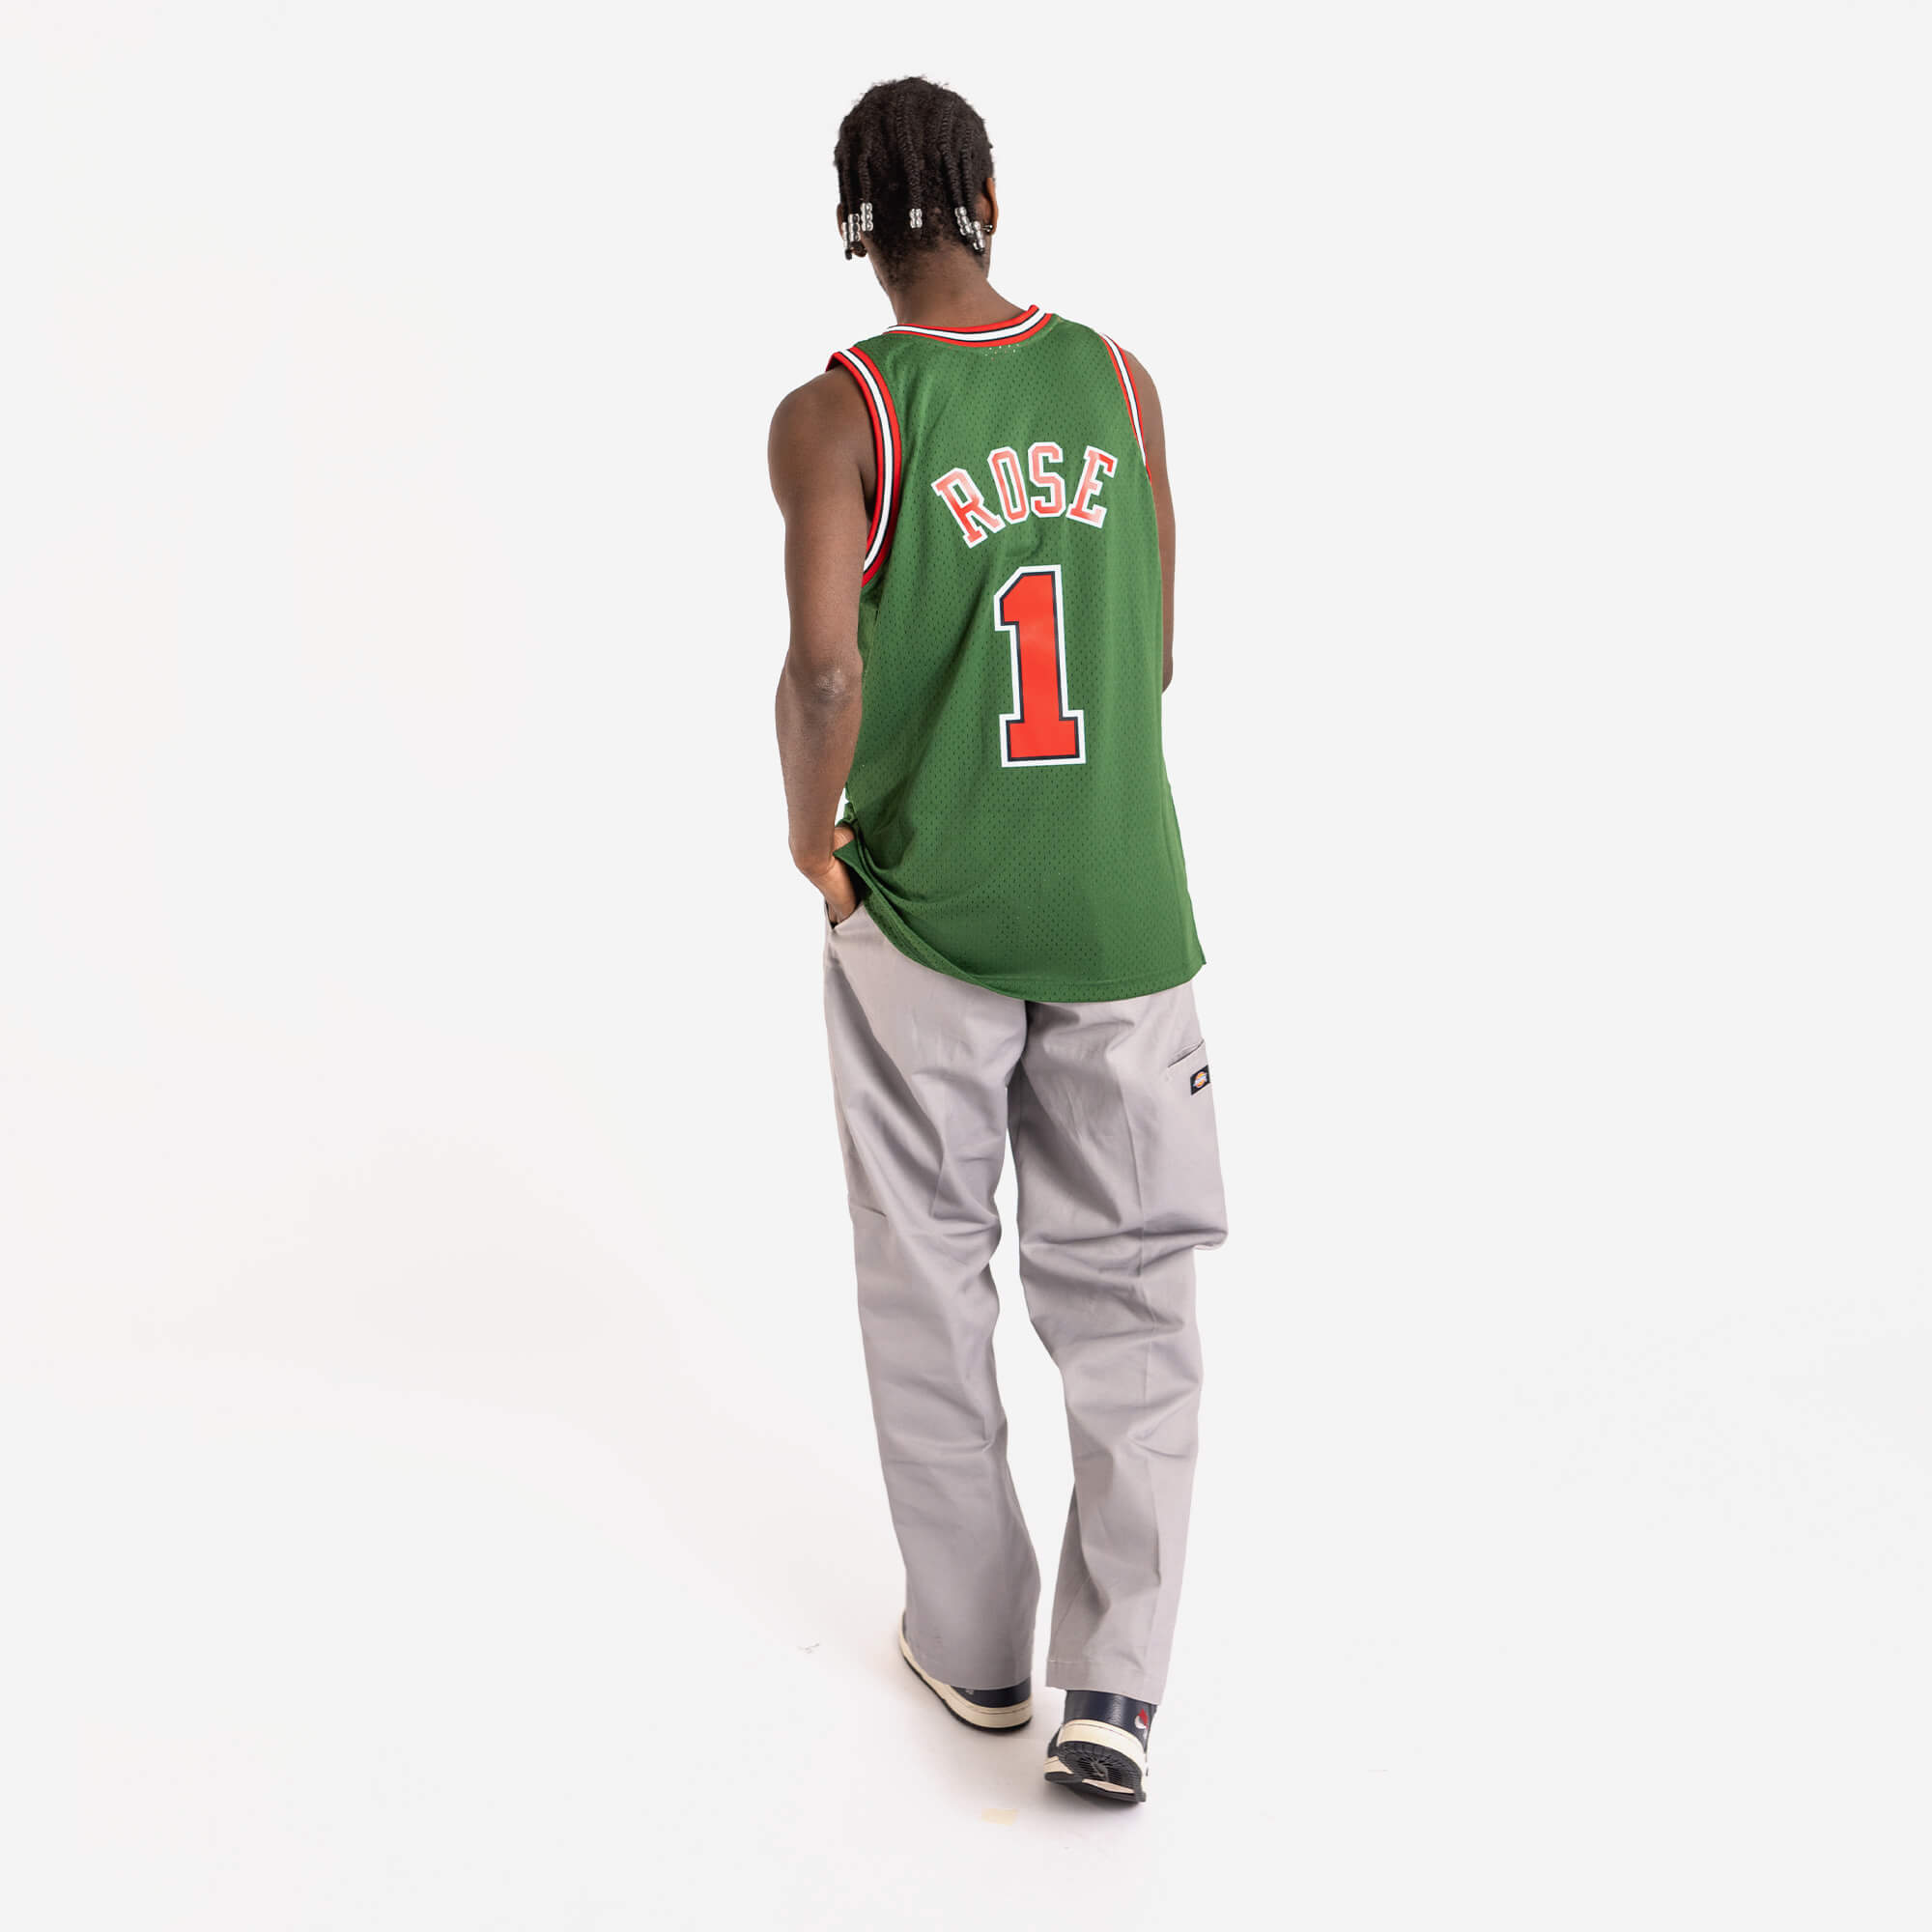 Derrick Rose Chicago Bulls #1 Adidas NBA Basketball Jersey – thefuzzyfelt